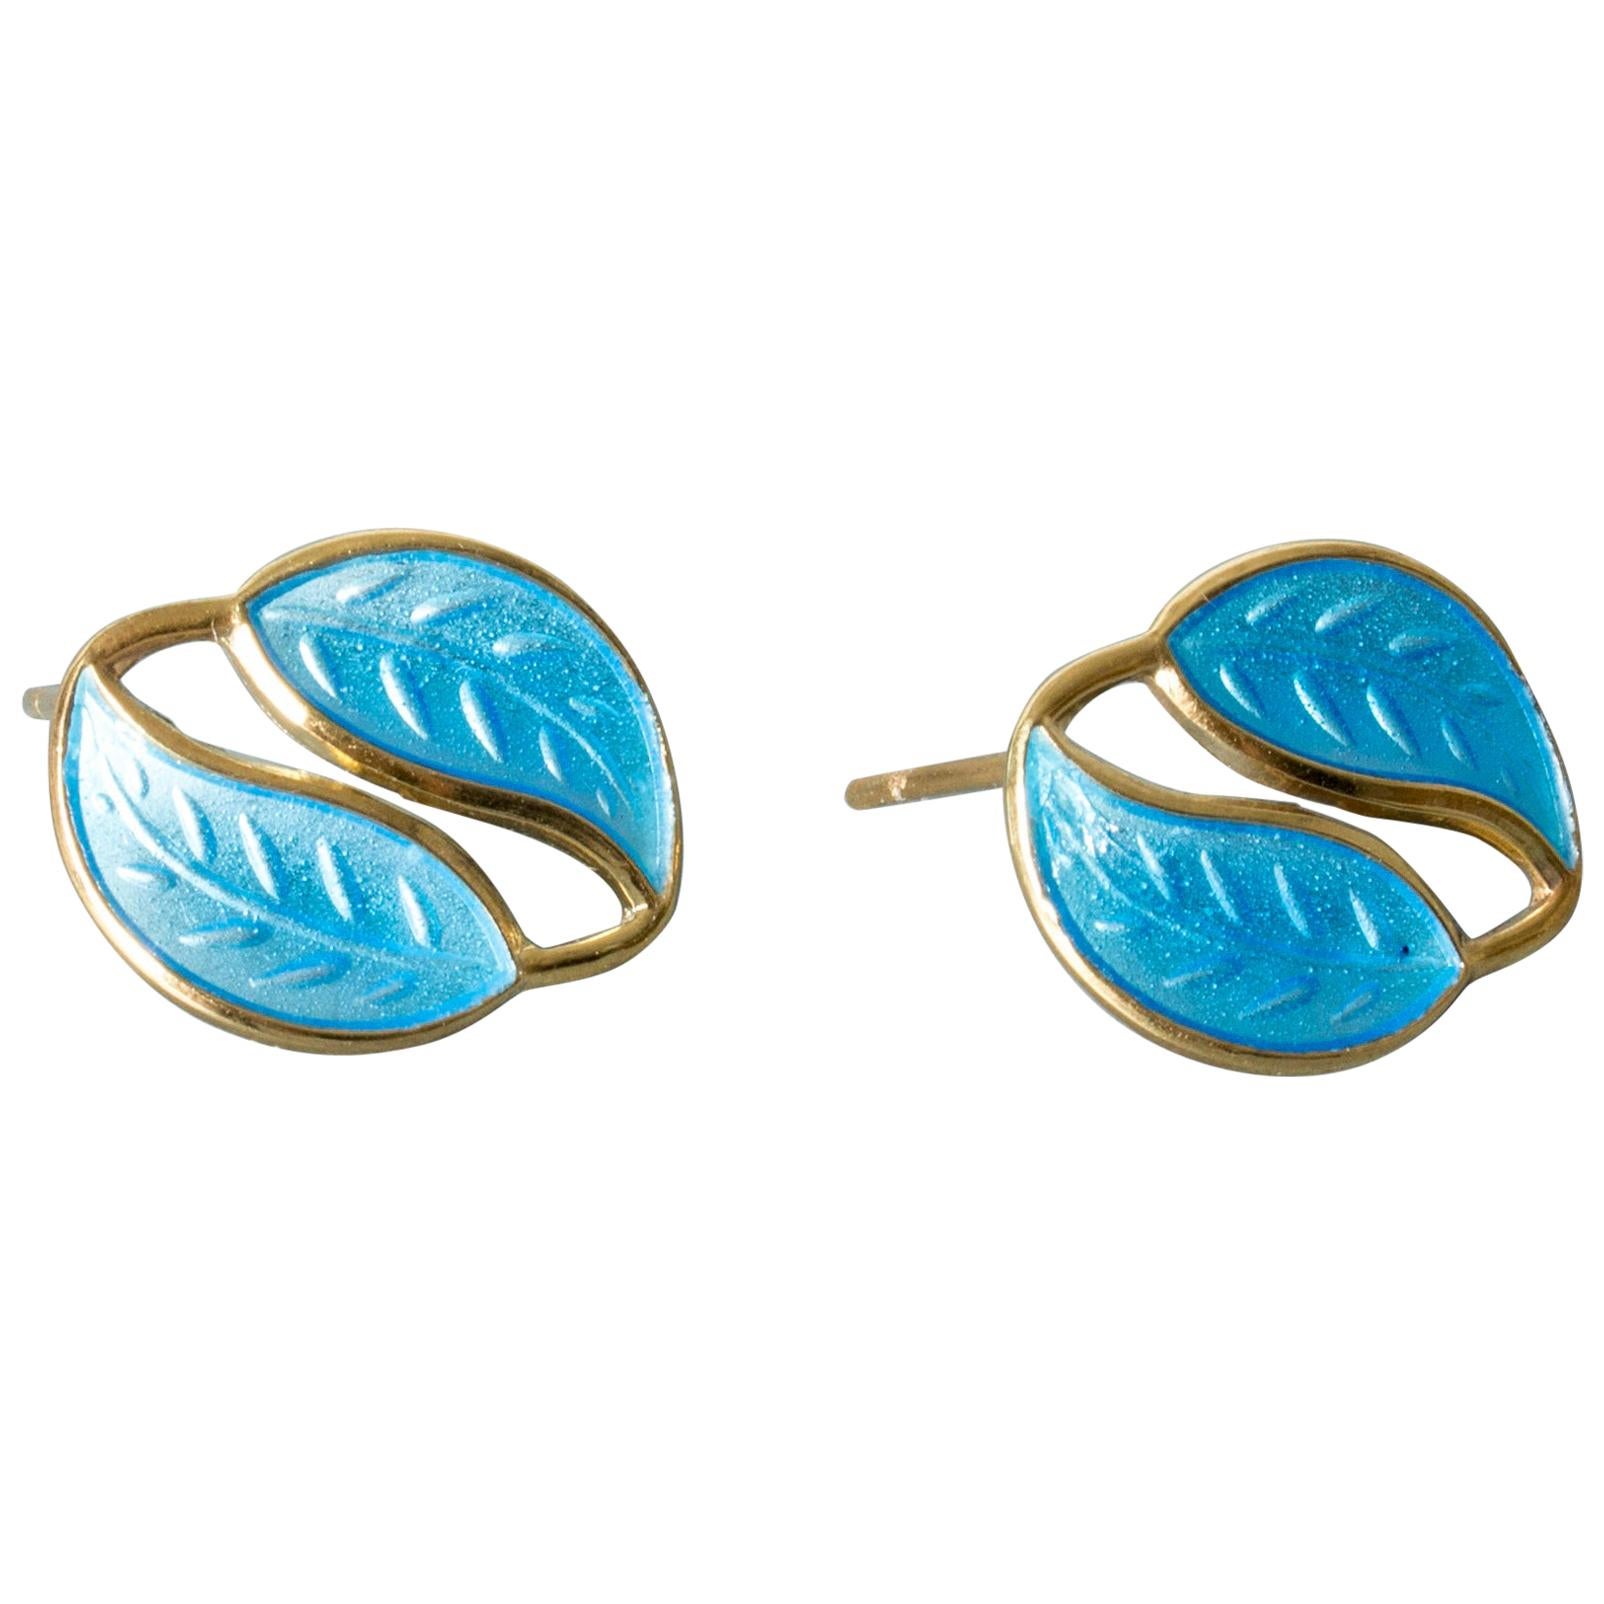 Pair of Blue Enamel Earrings from David Andersen, Norway, 1950s